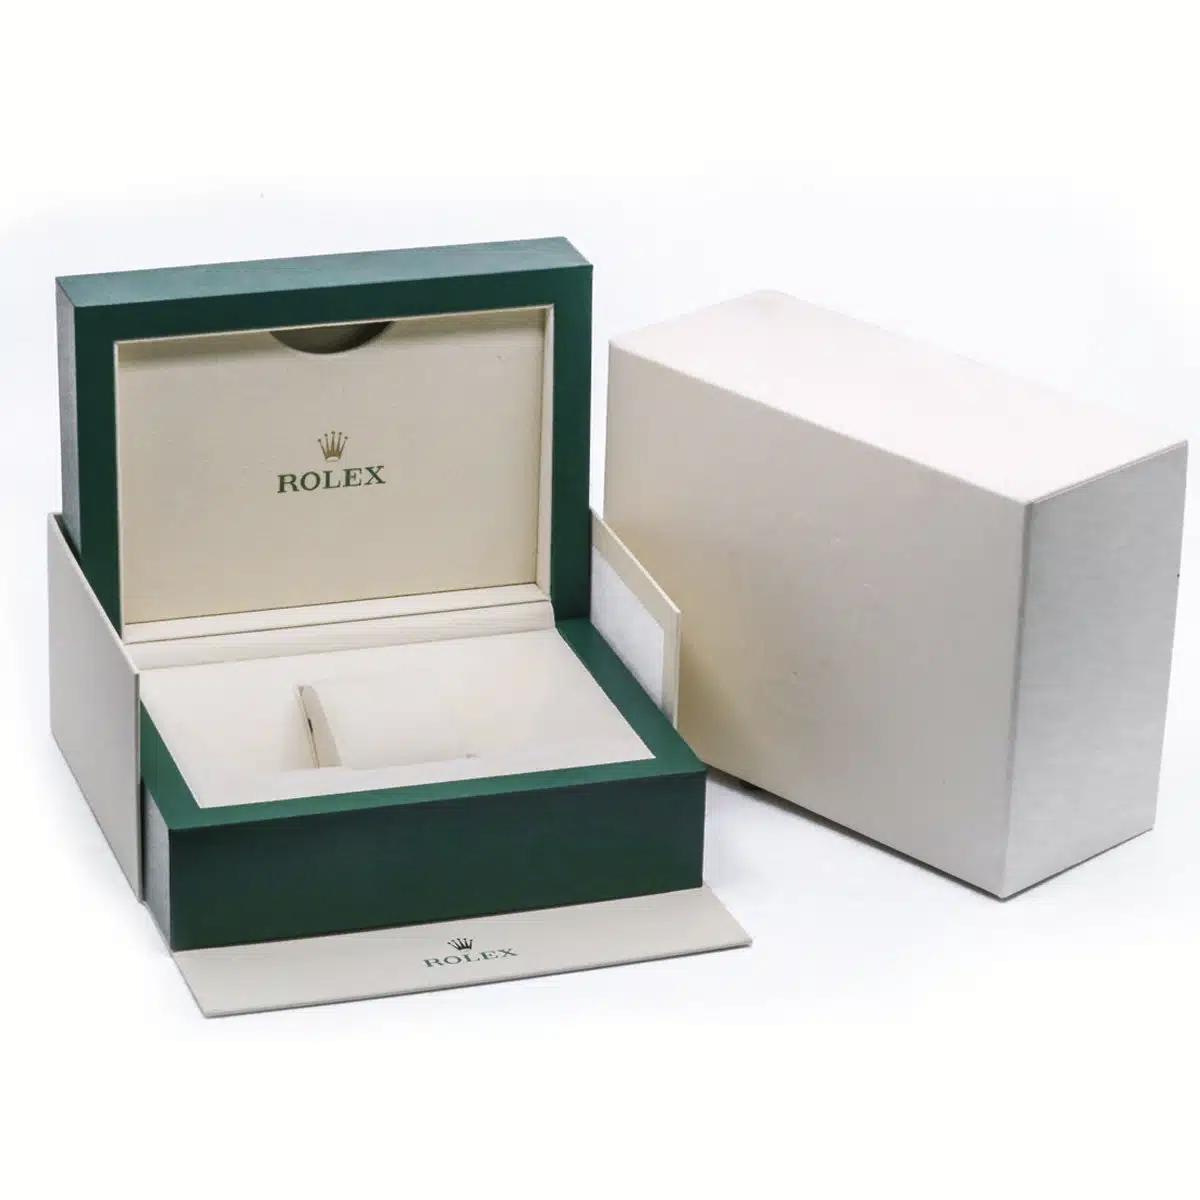 Đồng Hồ Rolex Oyster Perpetual 115234-0011 Diamonds Dial 34mm Nữ Đen Xám